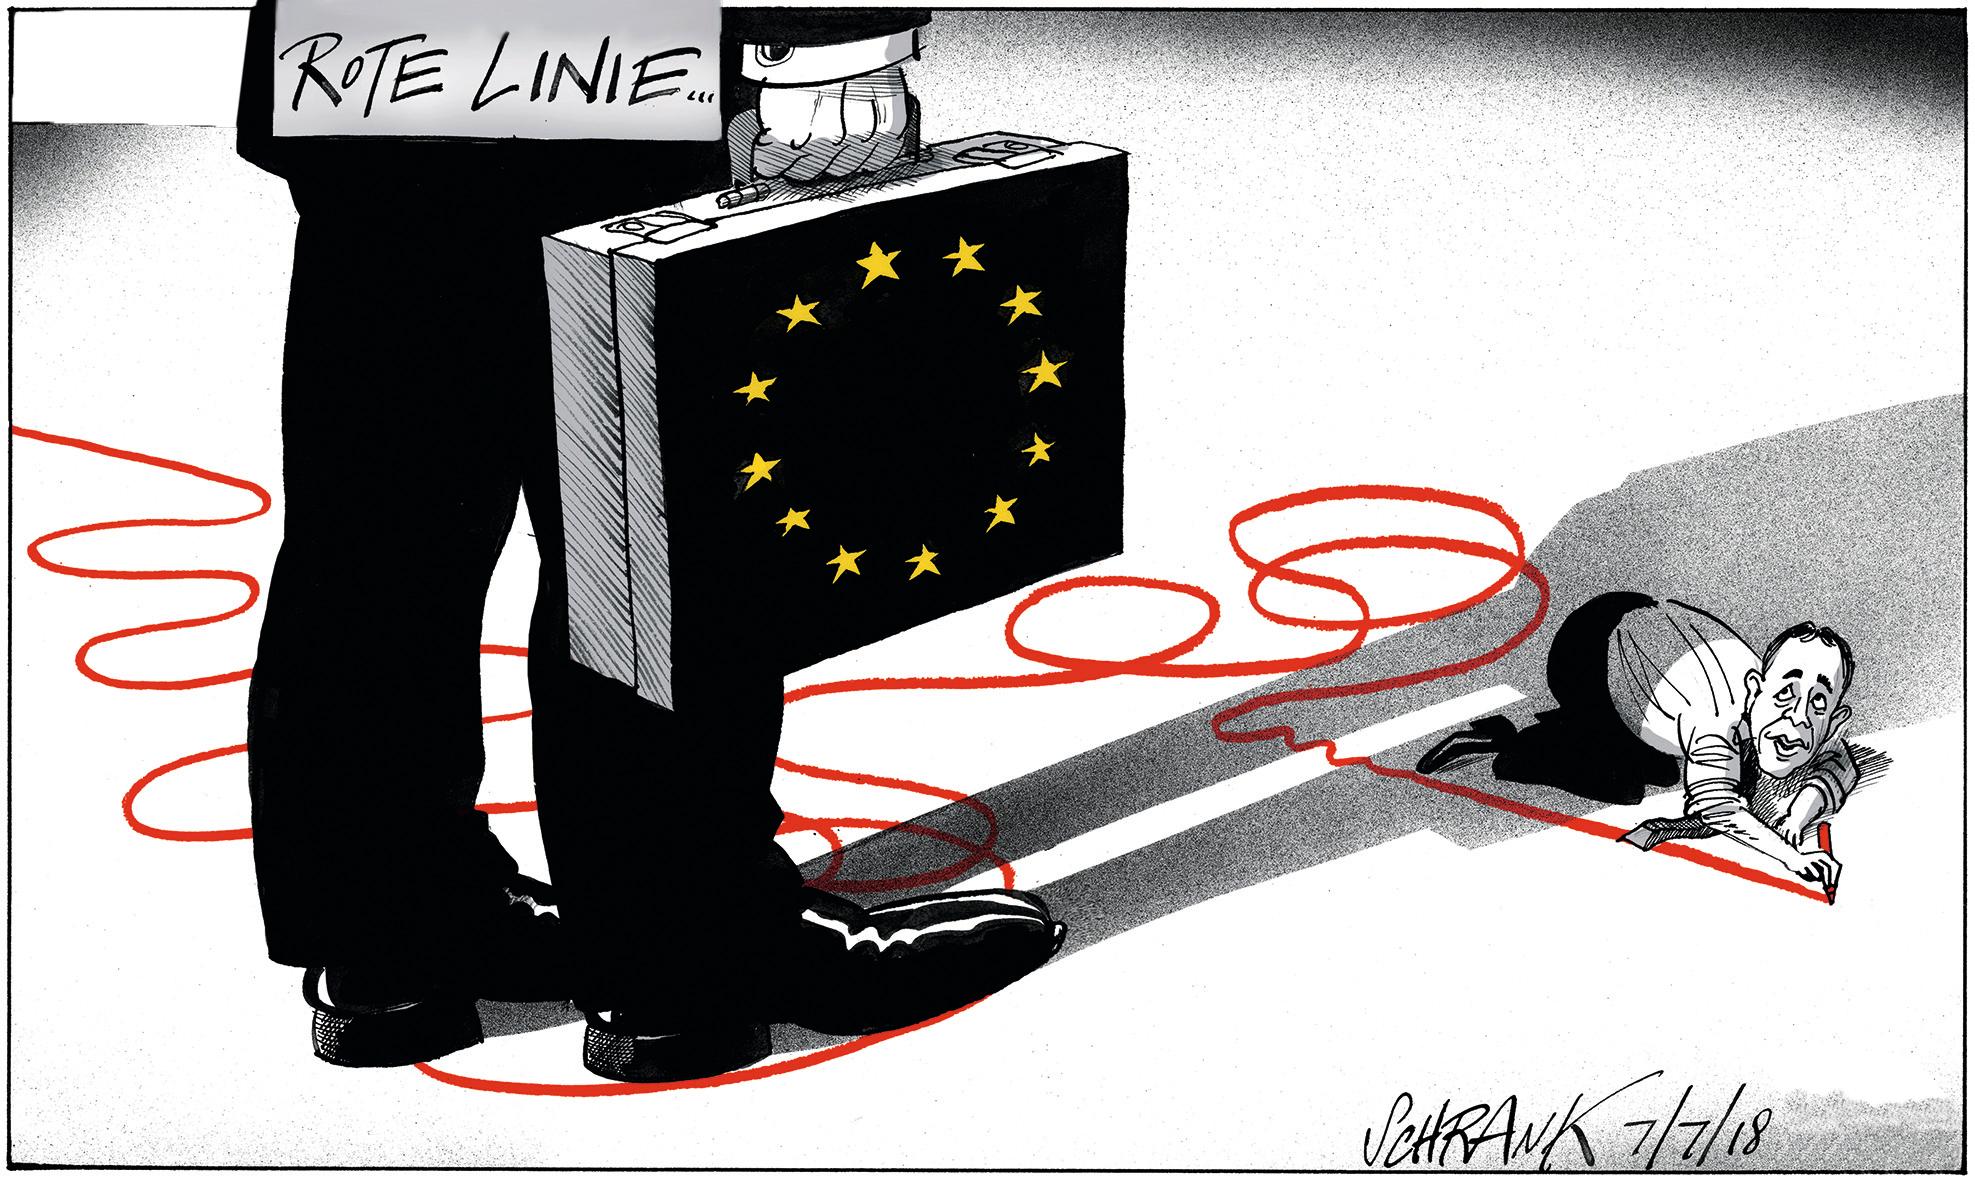 Geschäftsmann mit Aktenkoffer und EU Symbol, kleines Männchen zeichnet rote Linie am Boden